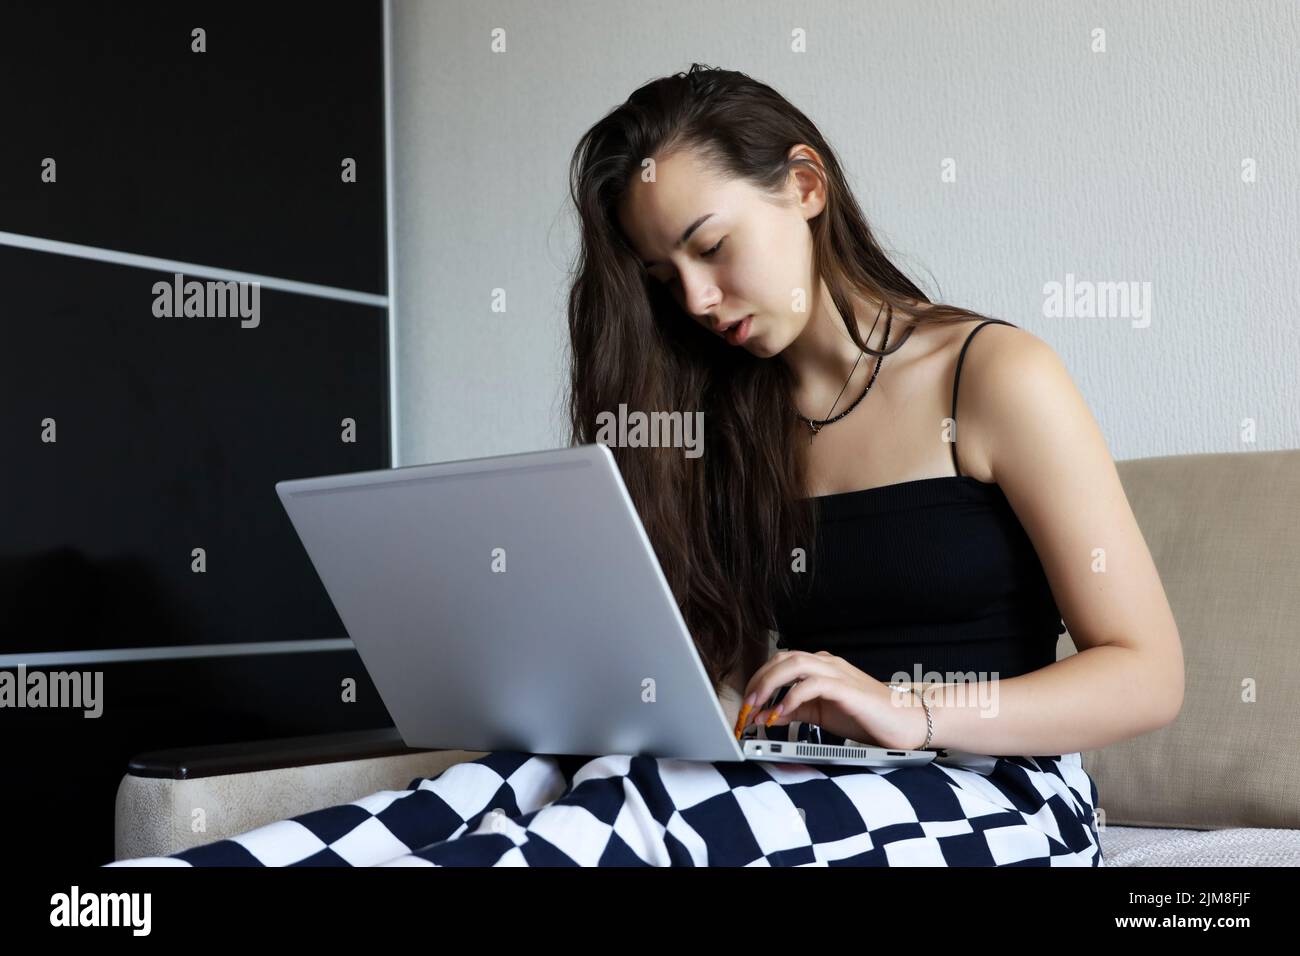 Bella ragazza giovane con capelli lunghi che indossa la parte superiore nera seduta con il computer portatile sul divano. Concetto di lavoro, studio o tempo libero a casa Foto Stock